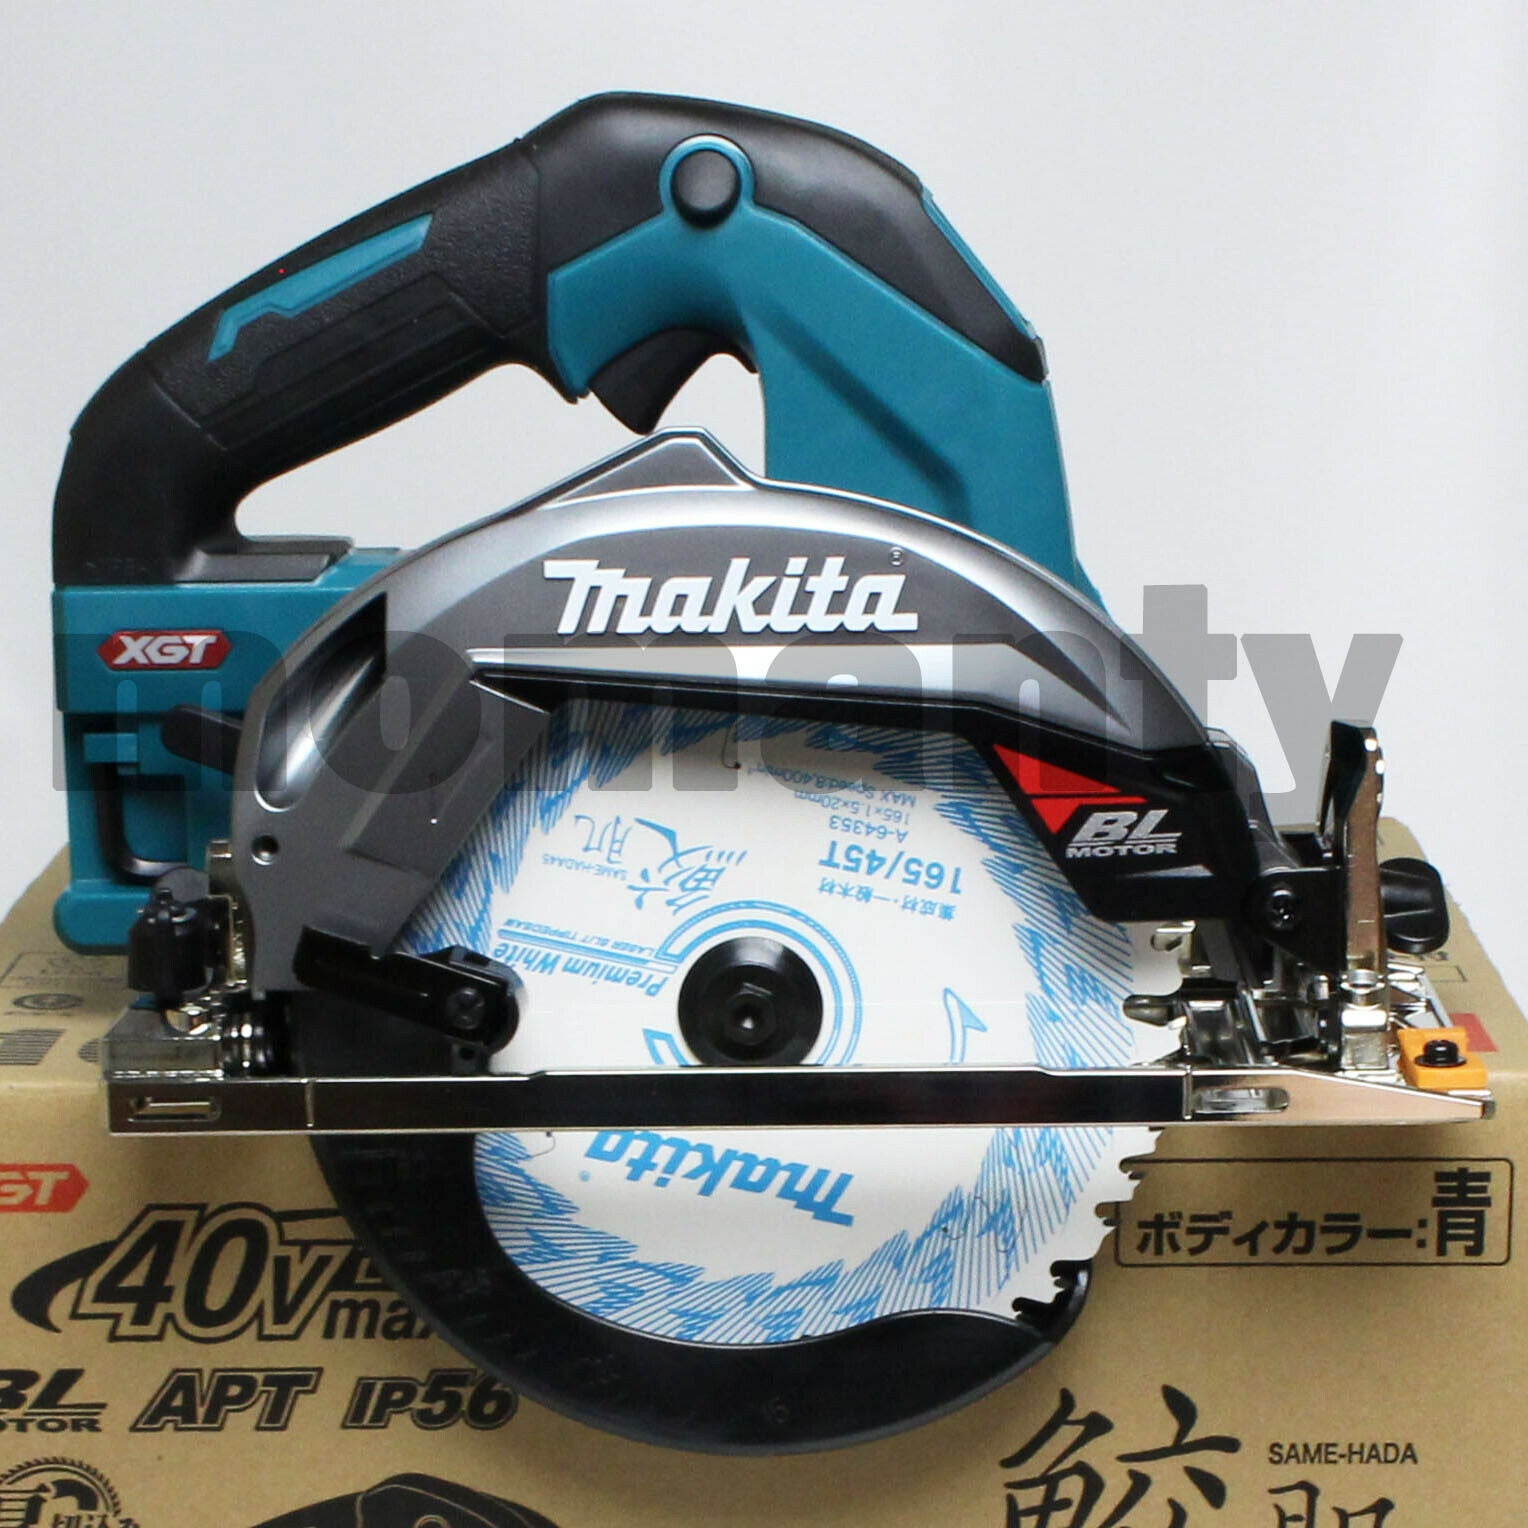 Makita HS001GZ 40V MAX XGT Cordless Circular Saw 165mm Blue tool